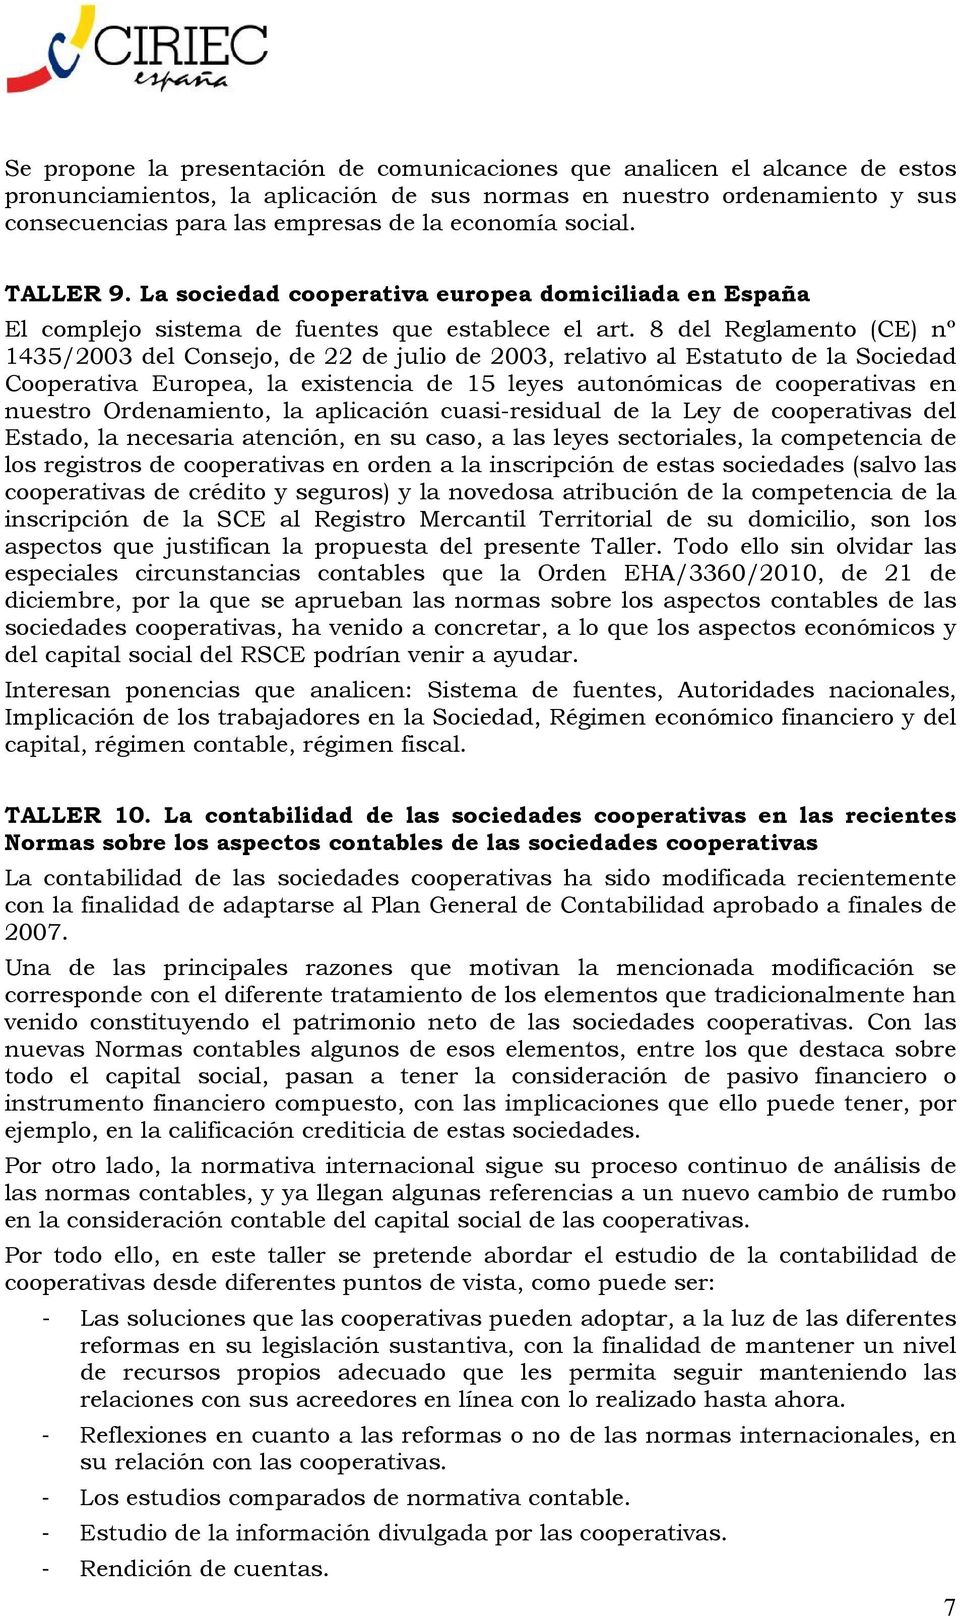 8 del Reglamento (CE) nº 1435/2003 del Consejo, de 22 de julio de 2003, relativo al Estatuto de la Sociedad Cooperativa Europea, la existencia de 15 leyes autonómicas de cooperativas en nuestro